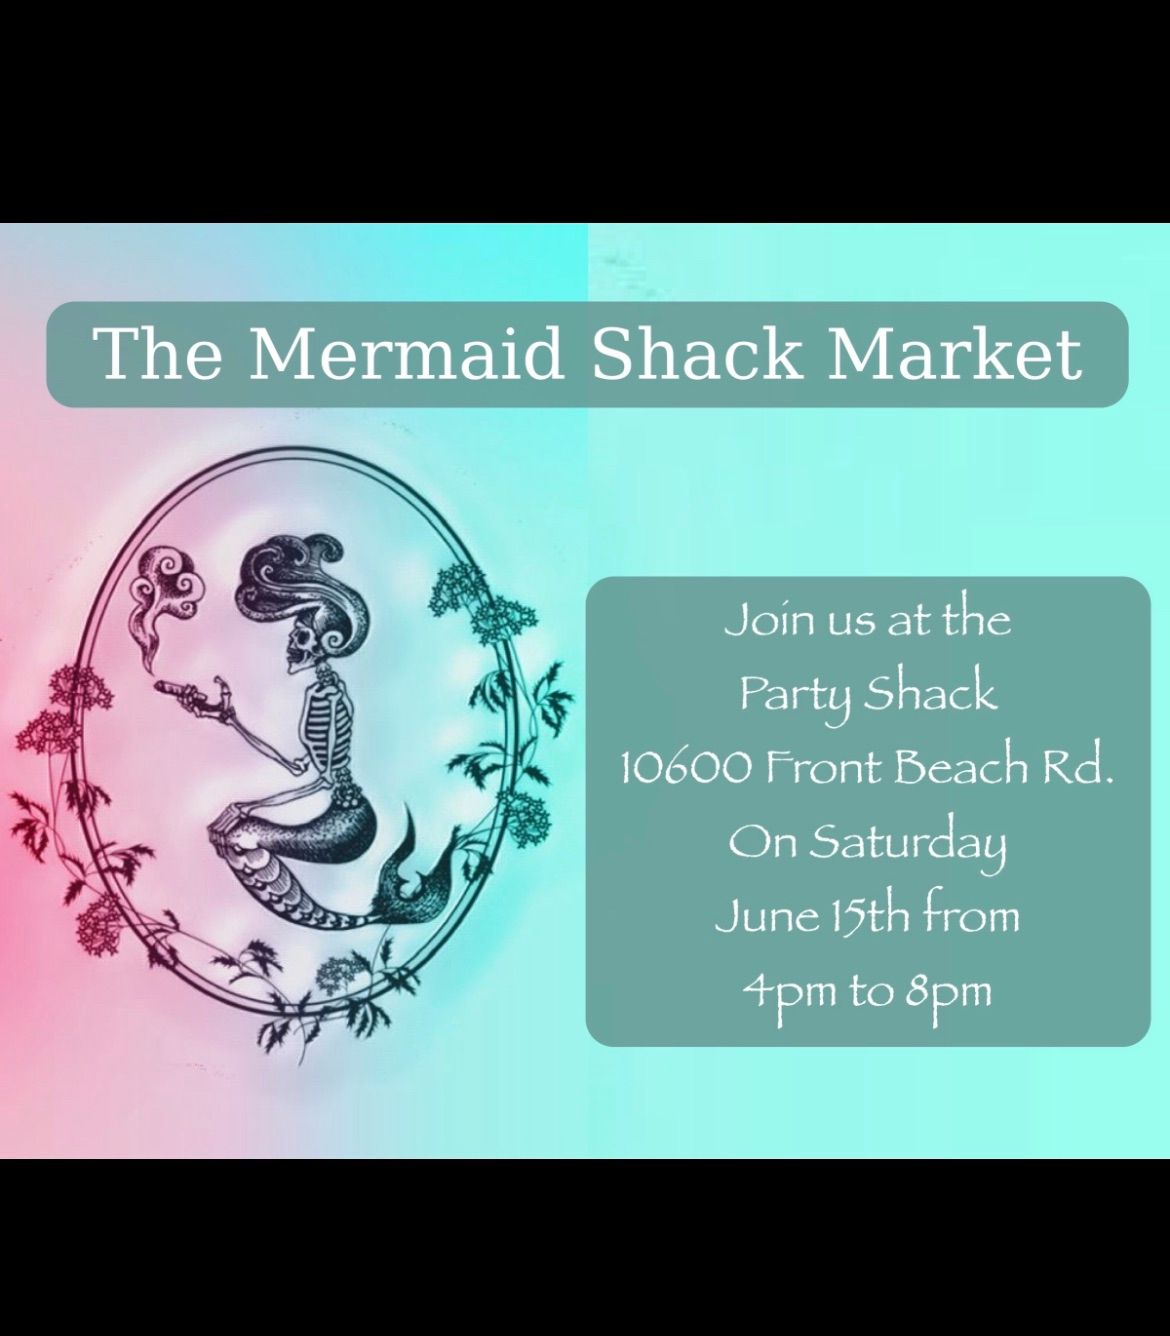 The Mermaid Shack Market 